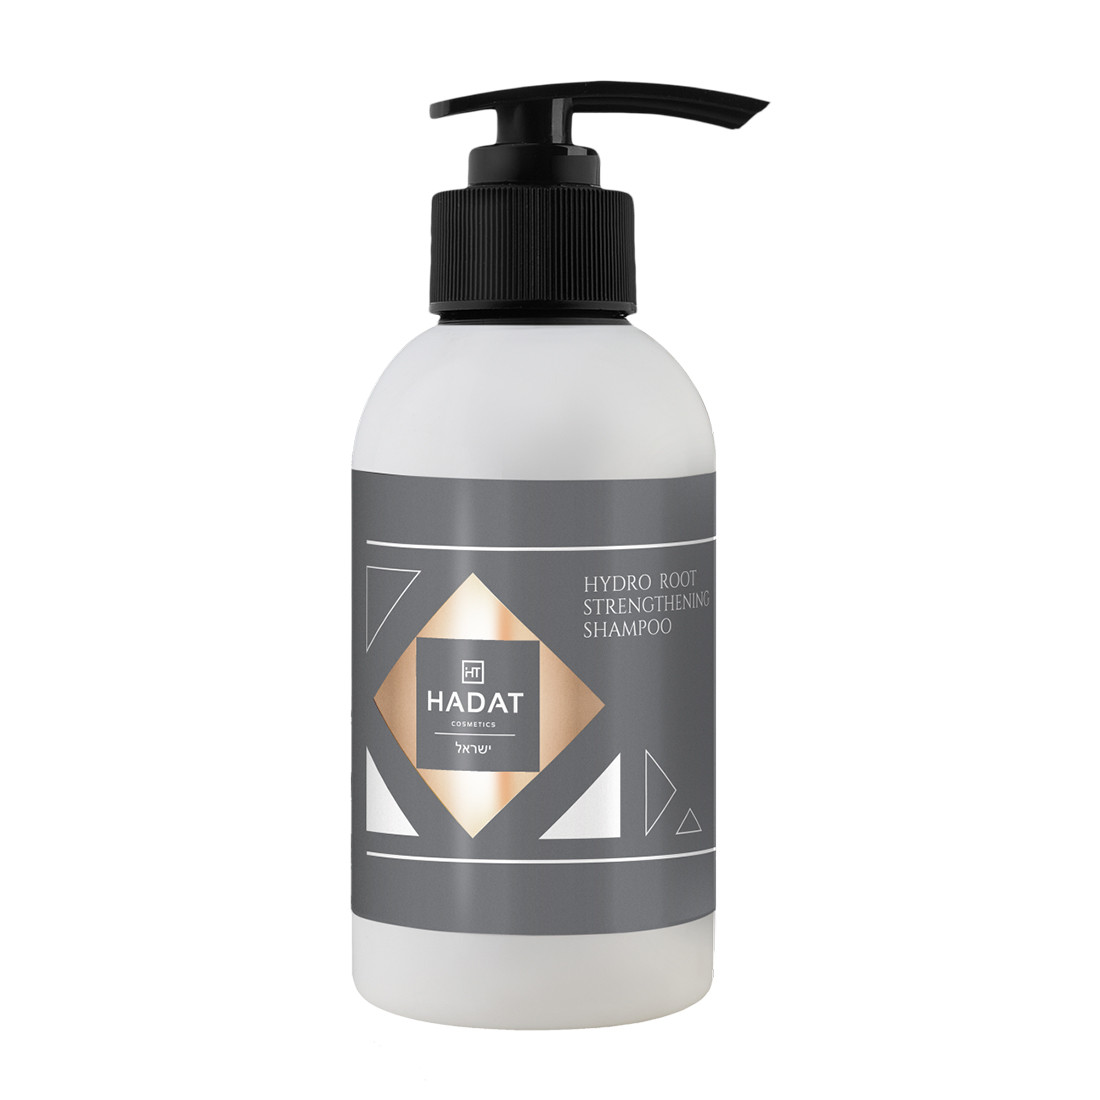 Отзывы о Hadat Hydro Root Strengthening Shampoo Шампунь для роста волос